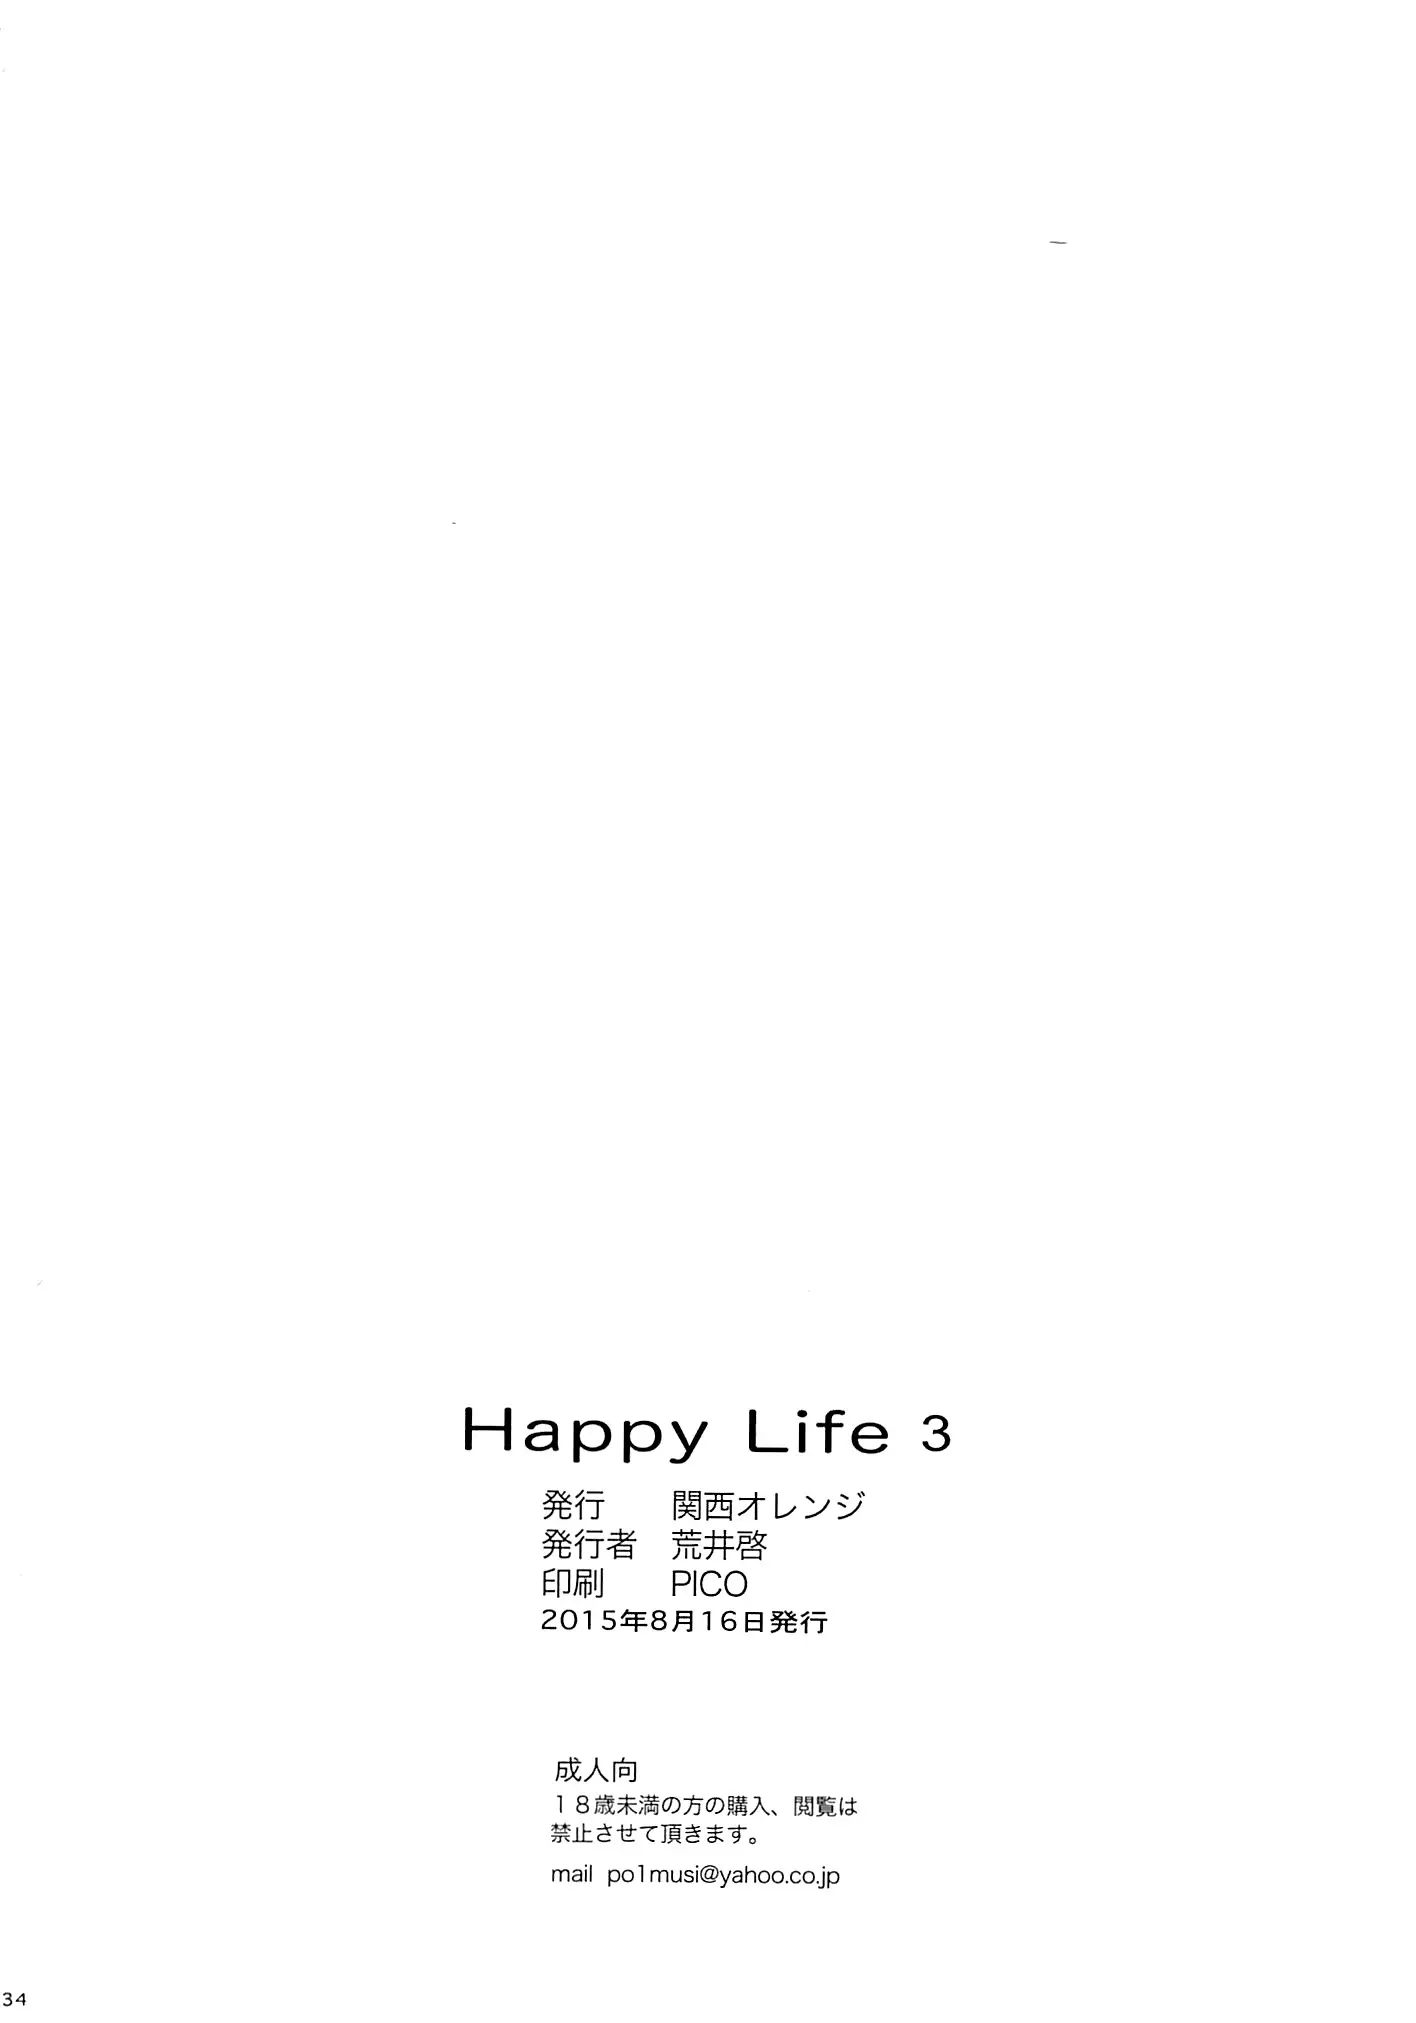 Happy Life 3 - Foto 31